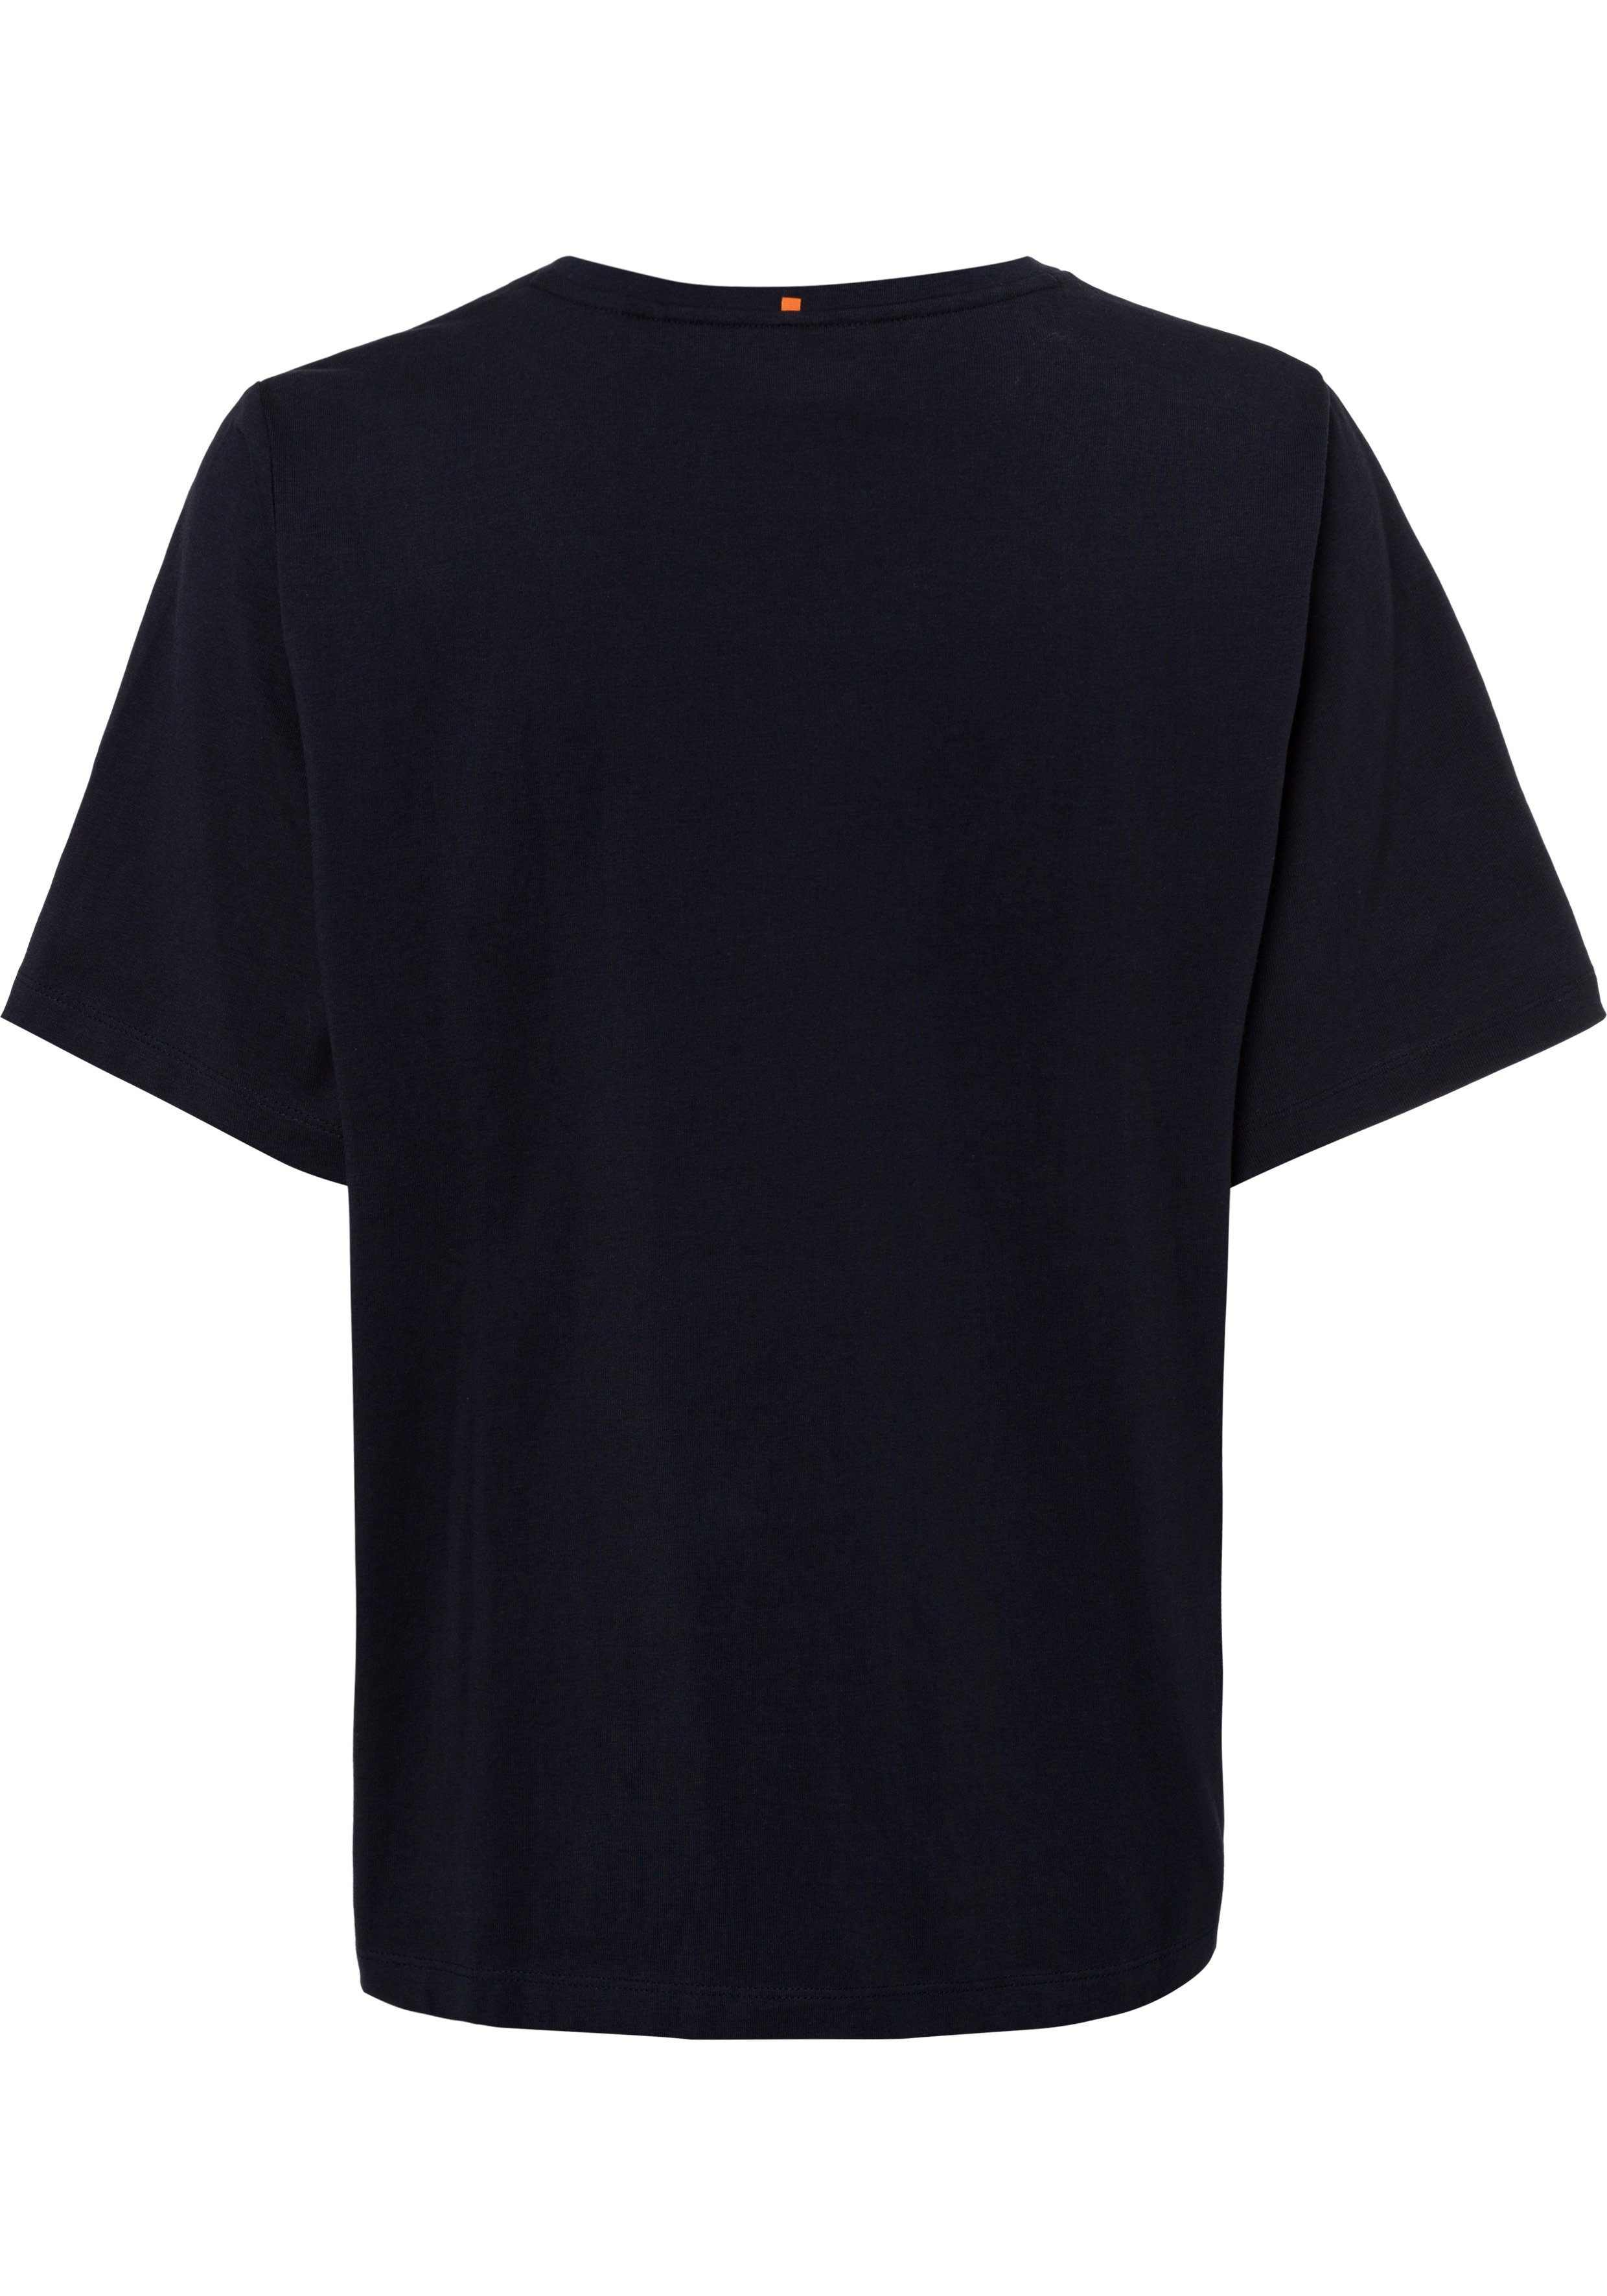 BOSS ORANGE T-Shirt mit BOSS-Kontrastband innen navy am Ausschnitt